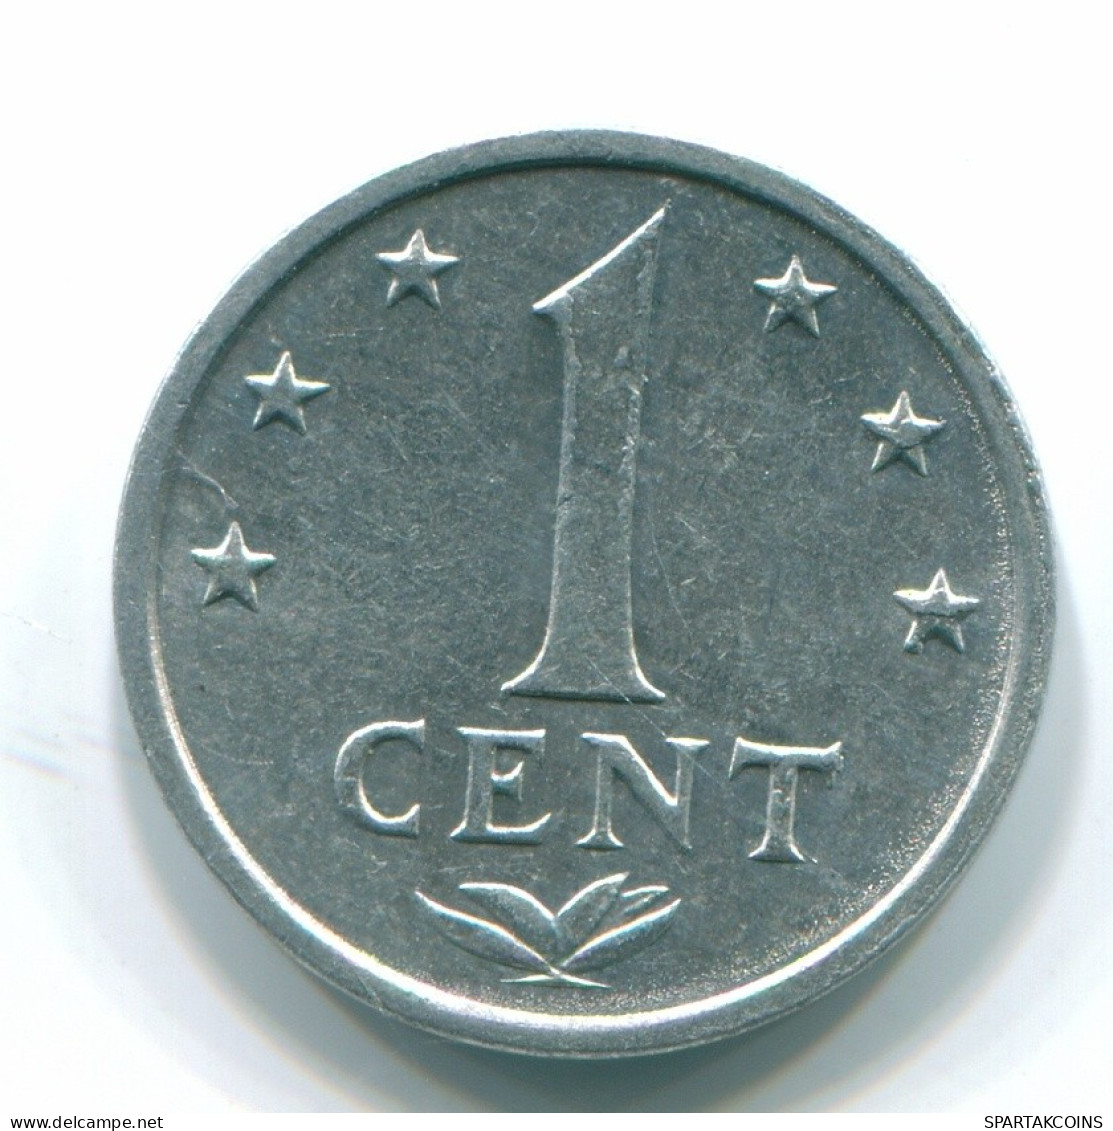 1 CENT 1980 NETHERLANDS ANTILLES Aluminium Colonial Coin #S11183.U.A - Netherlands Antilles